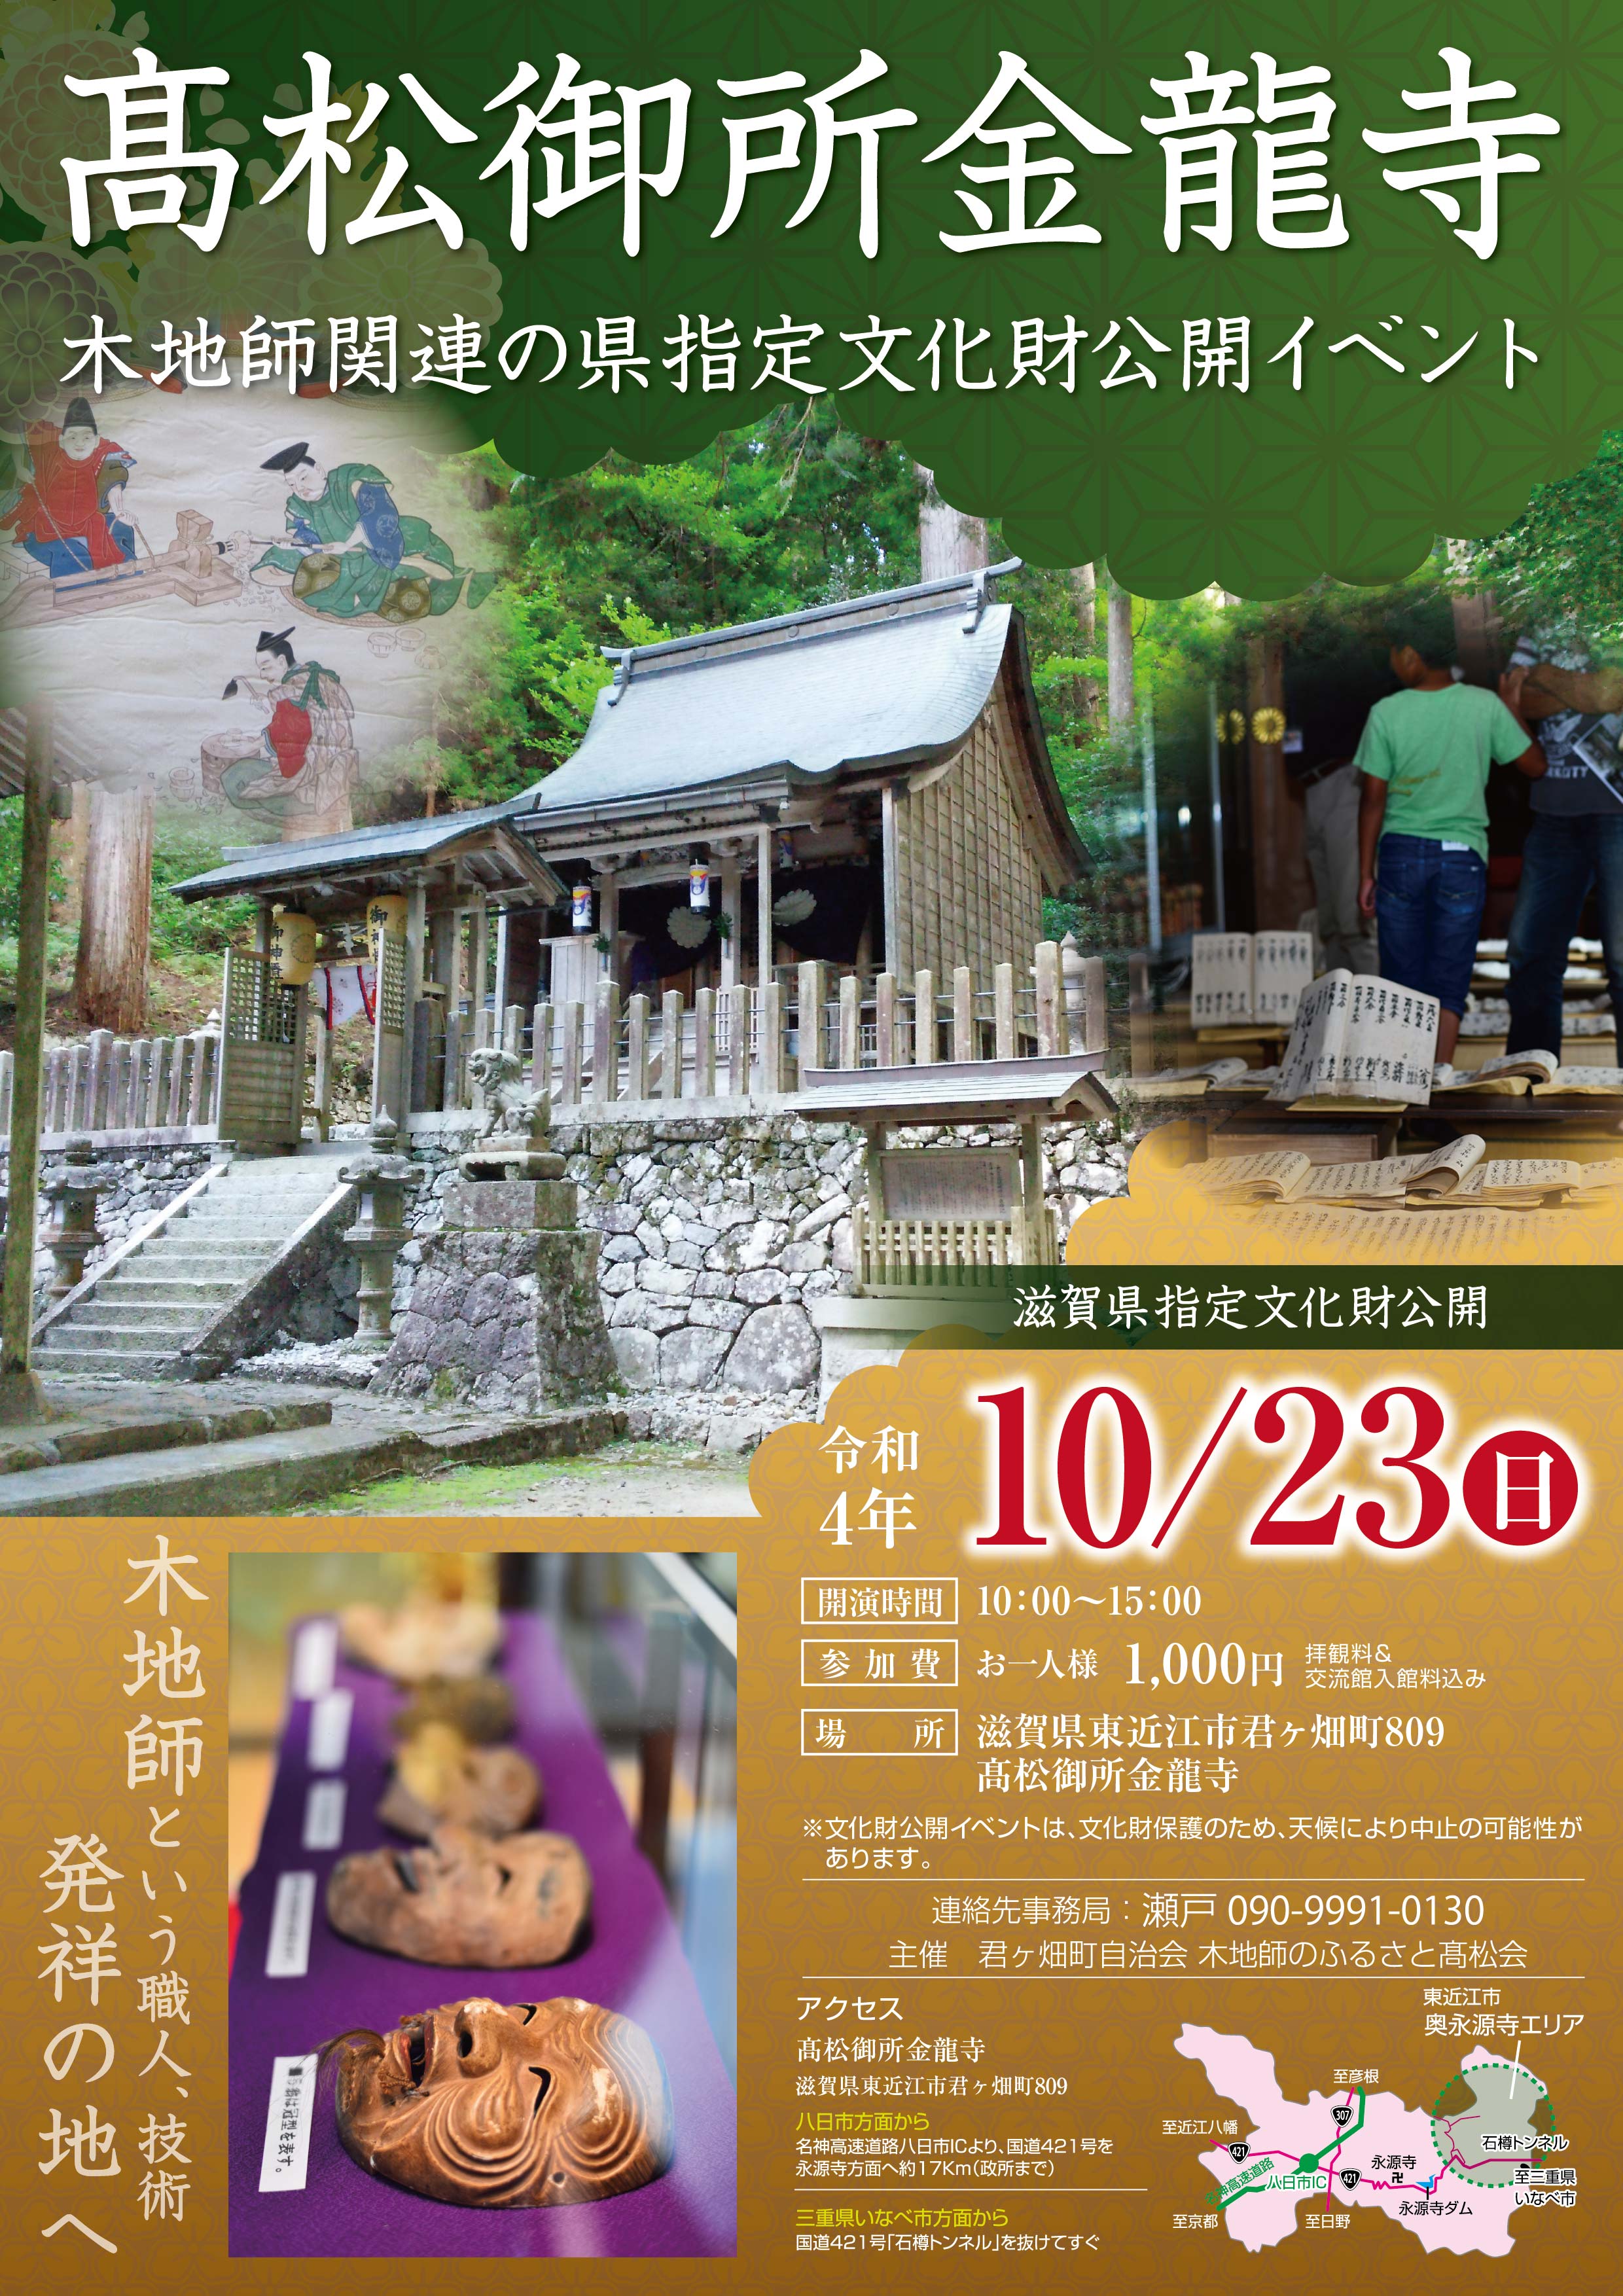 10/23(日)木地師関連の県指定文化財公開イベントを開催します。